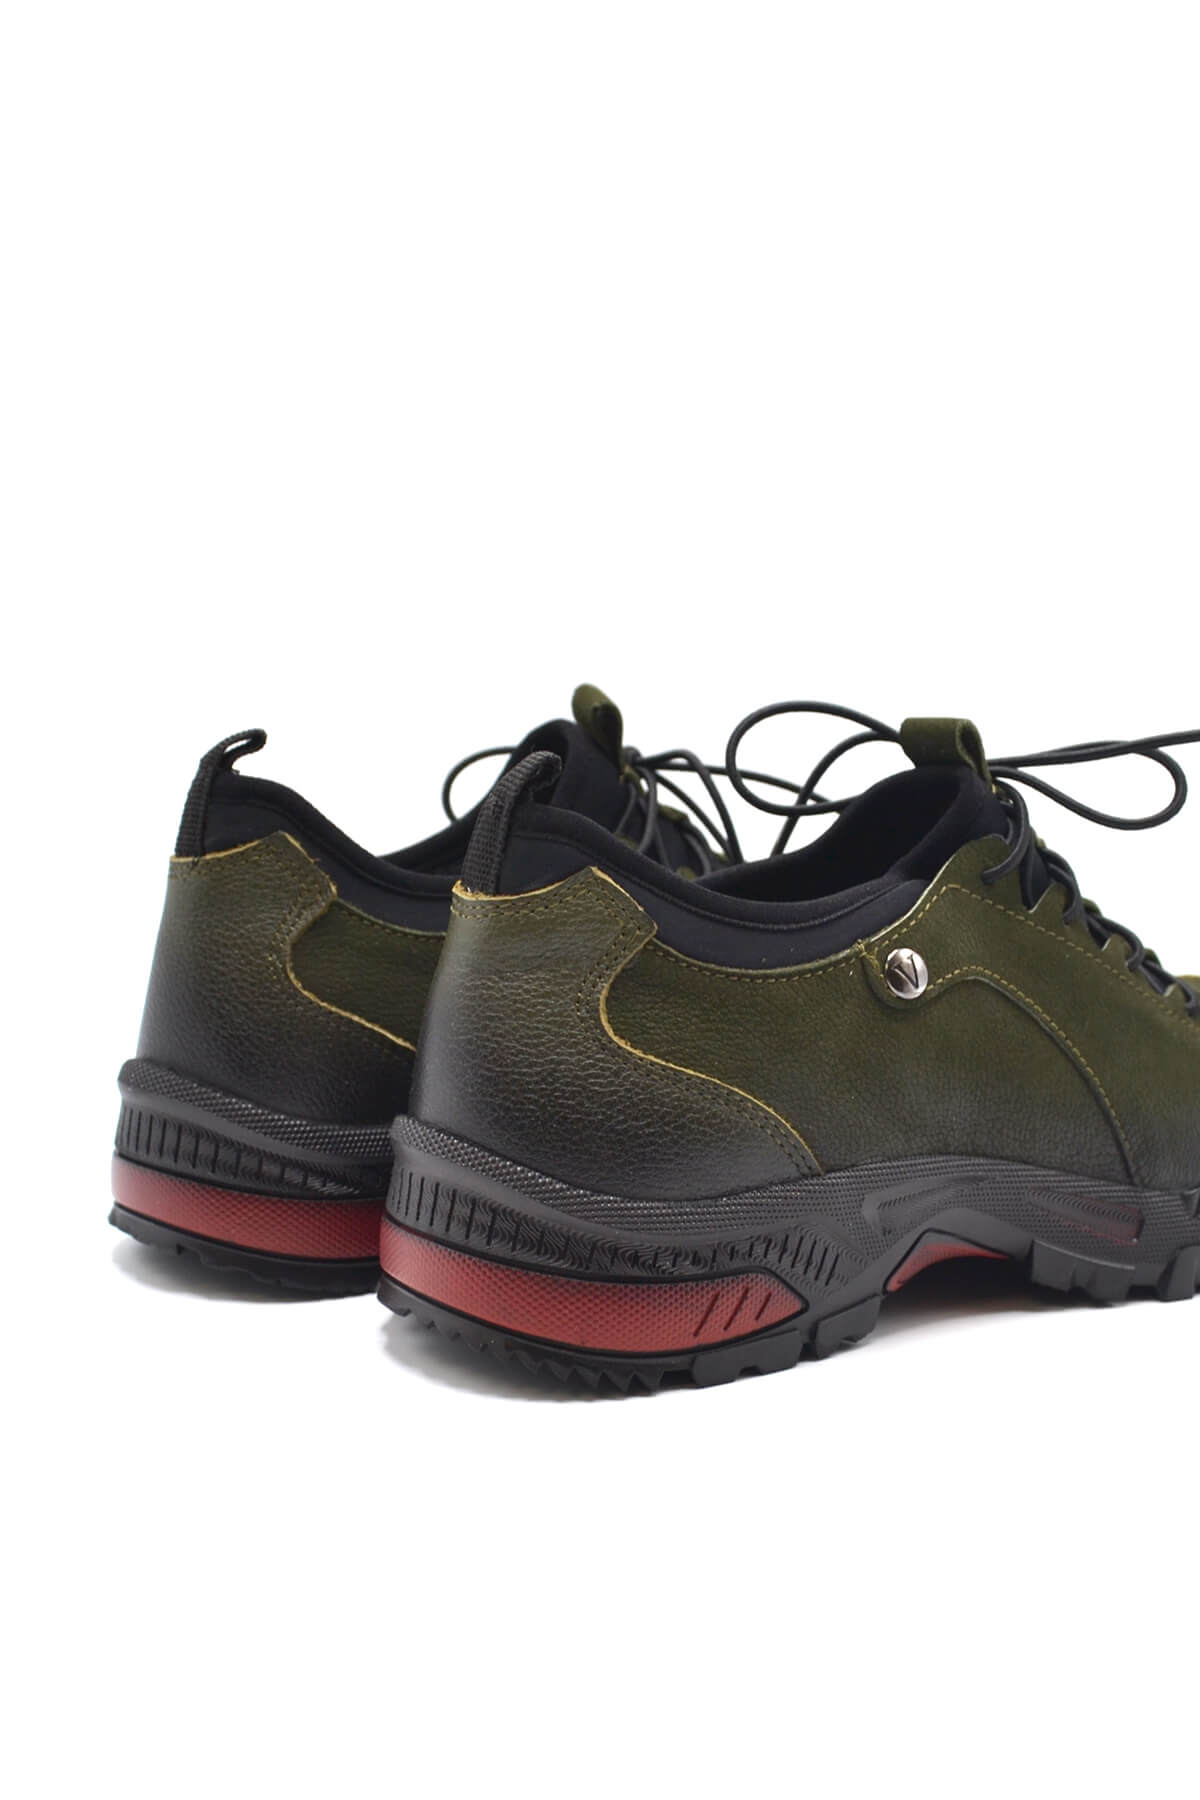 Kadın Comfort Deri Sneaker Yeşil 2252403K - Thumbnail